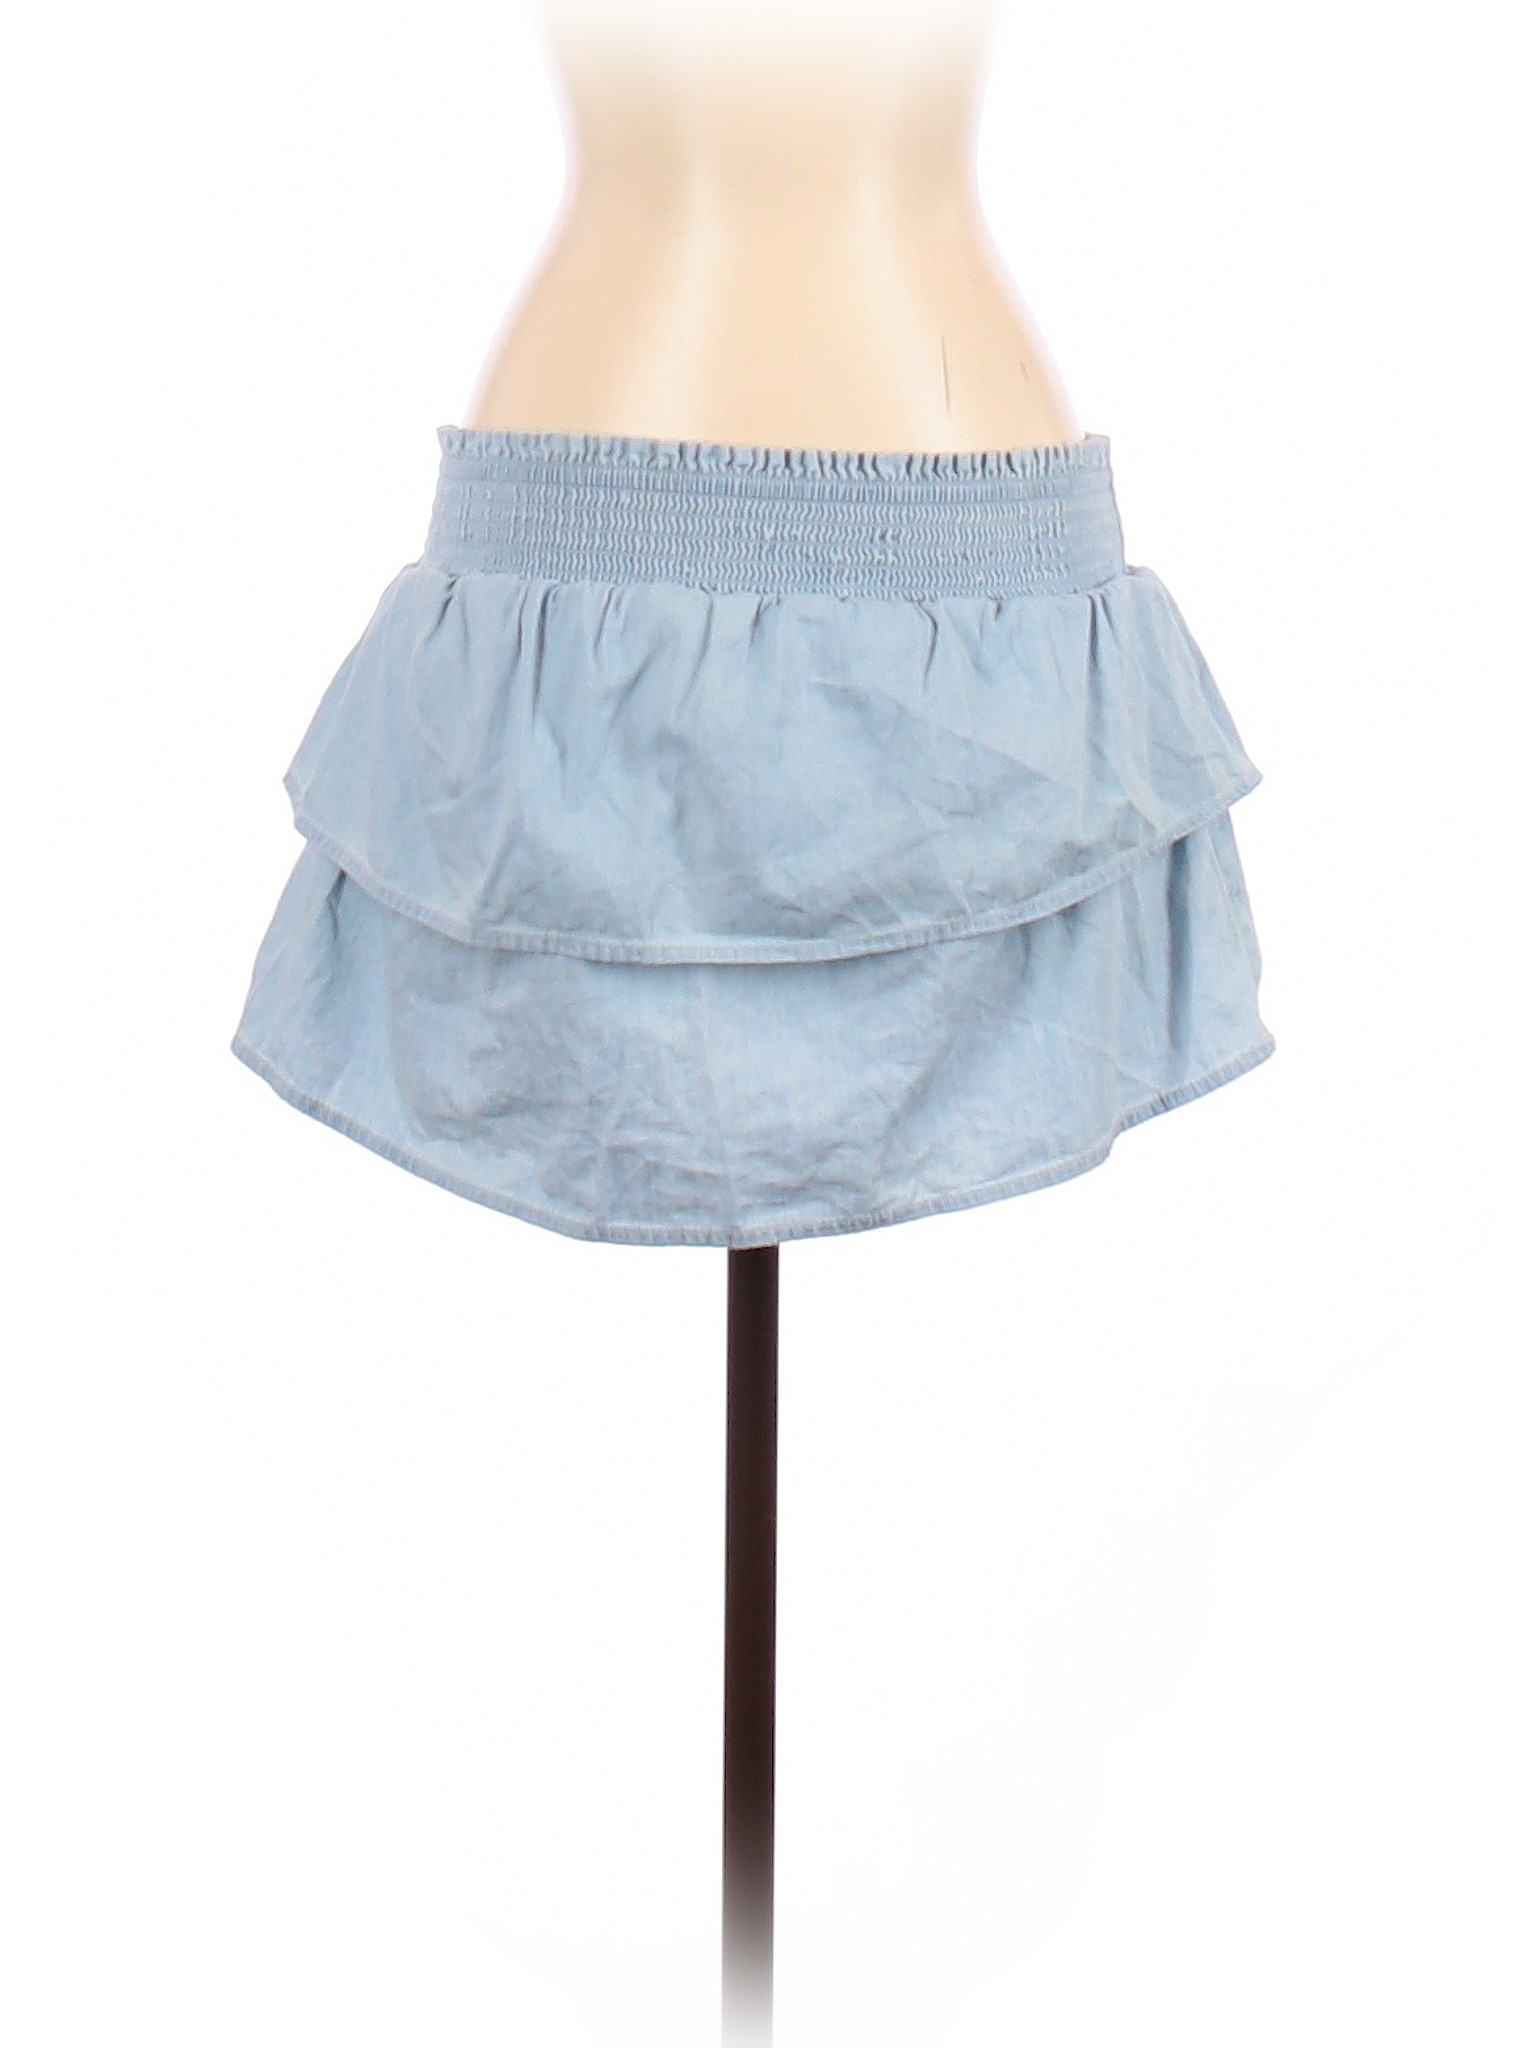 Aerie Women Blue Casual Skirt S | eBay